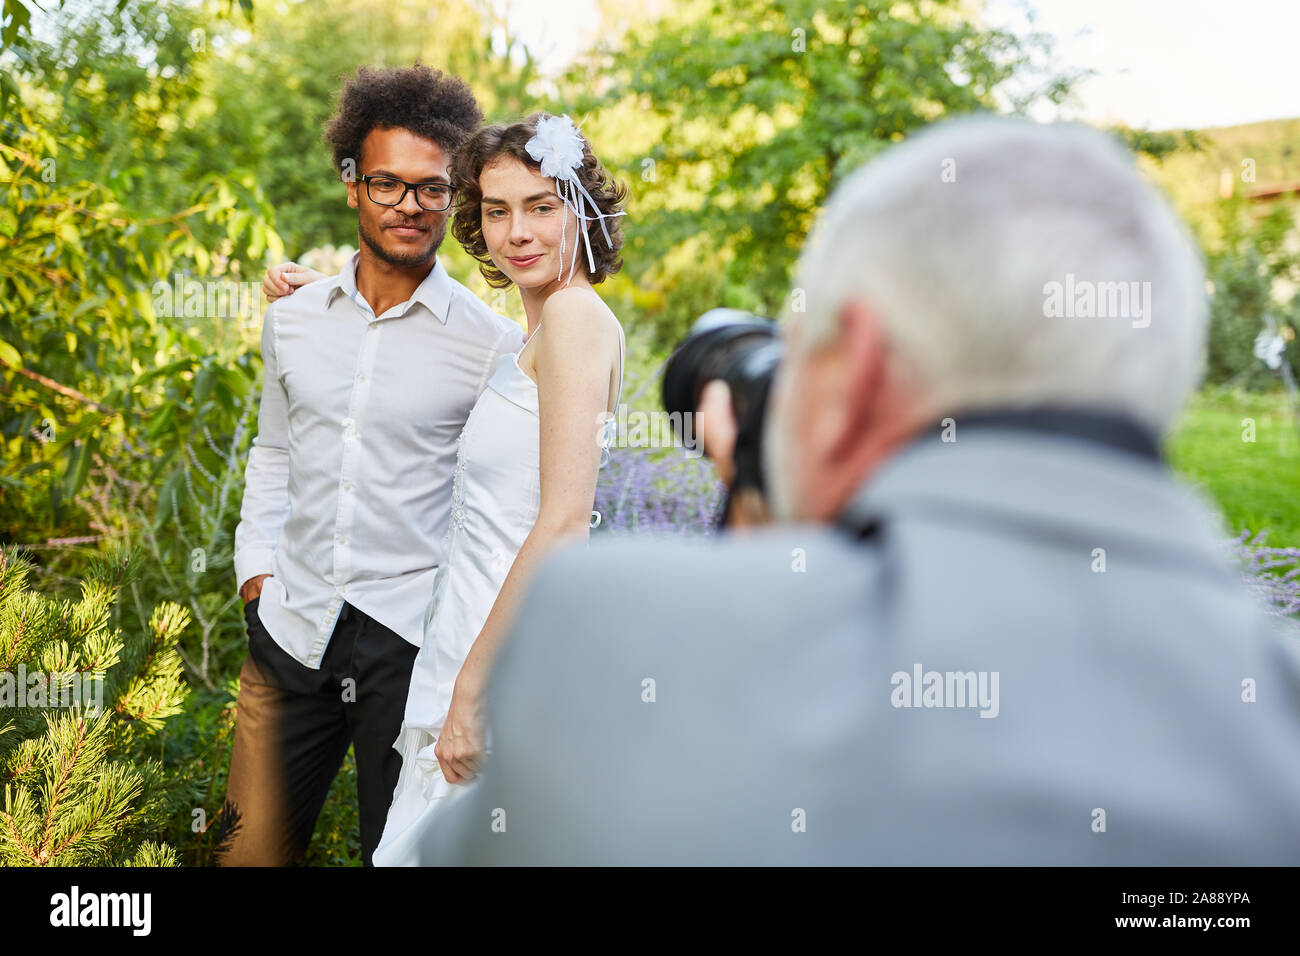 Wedding photographer photographs newlyweds in nature on wedding day Stock Photo